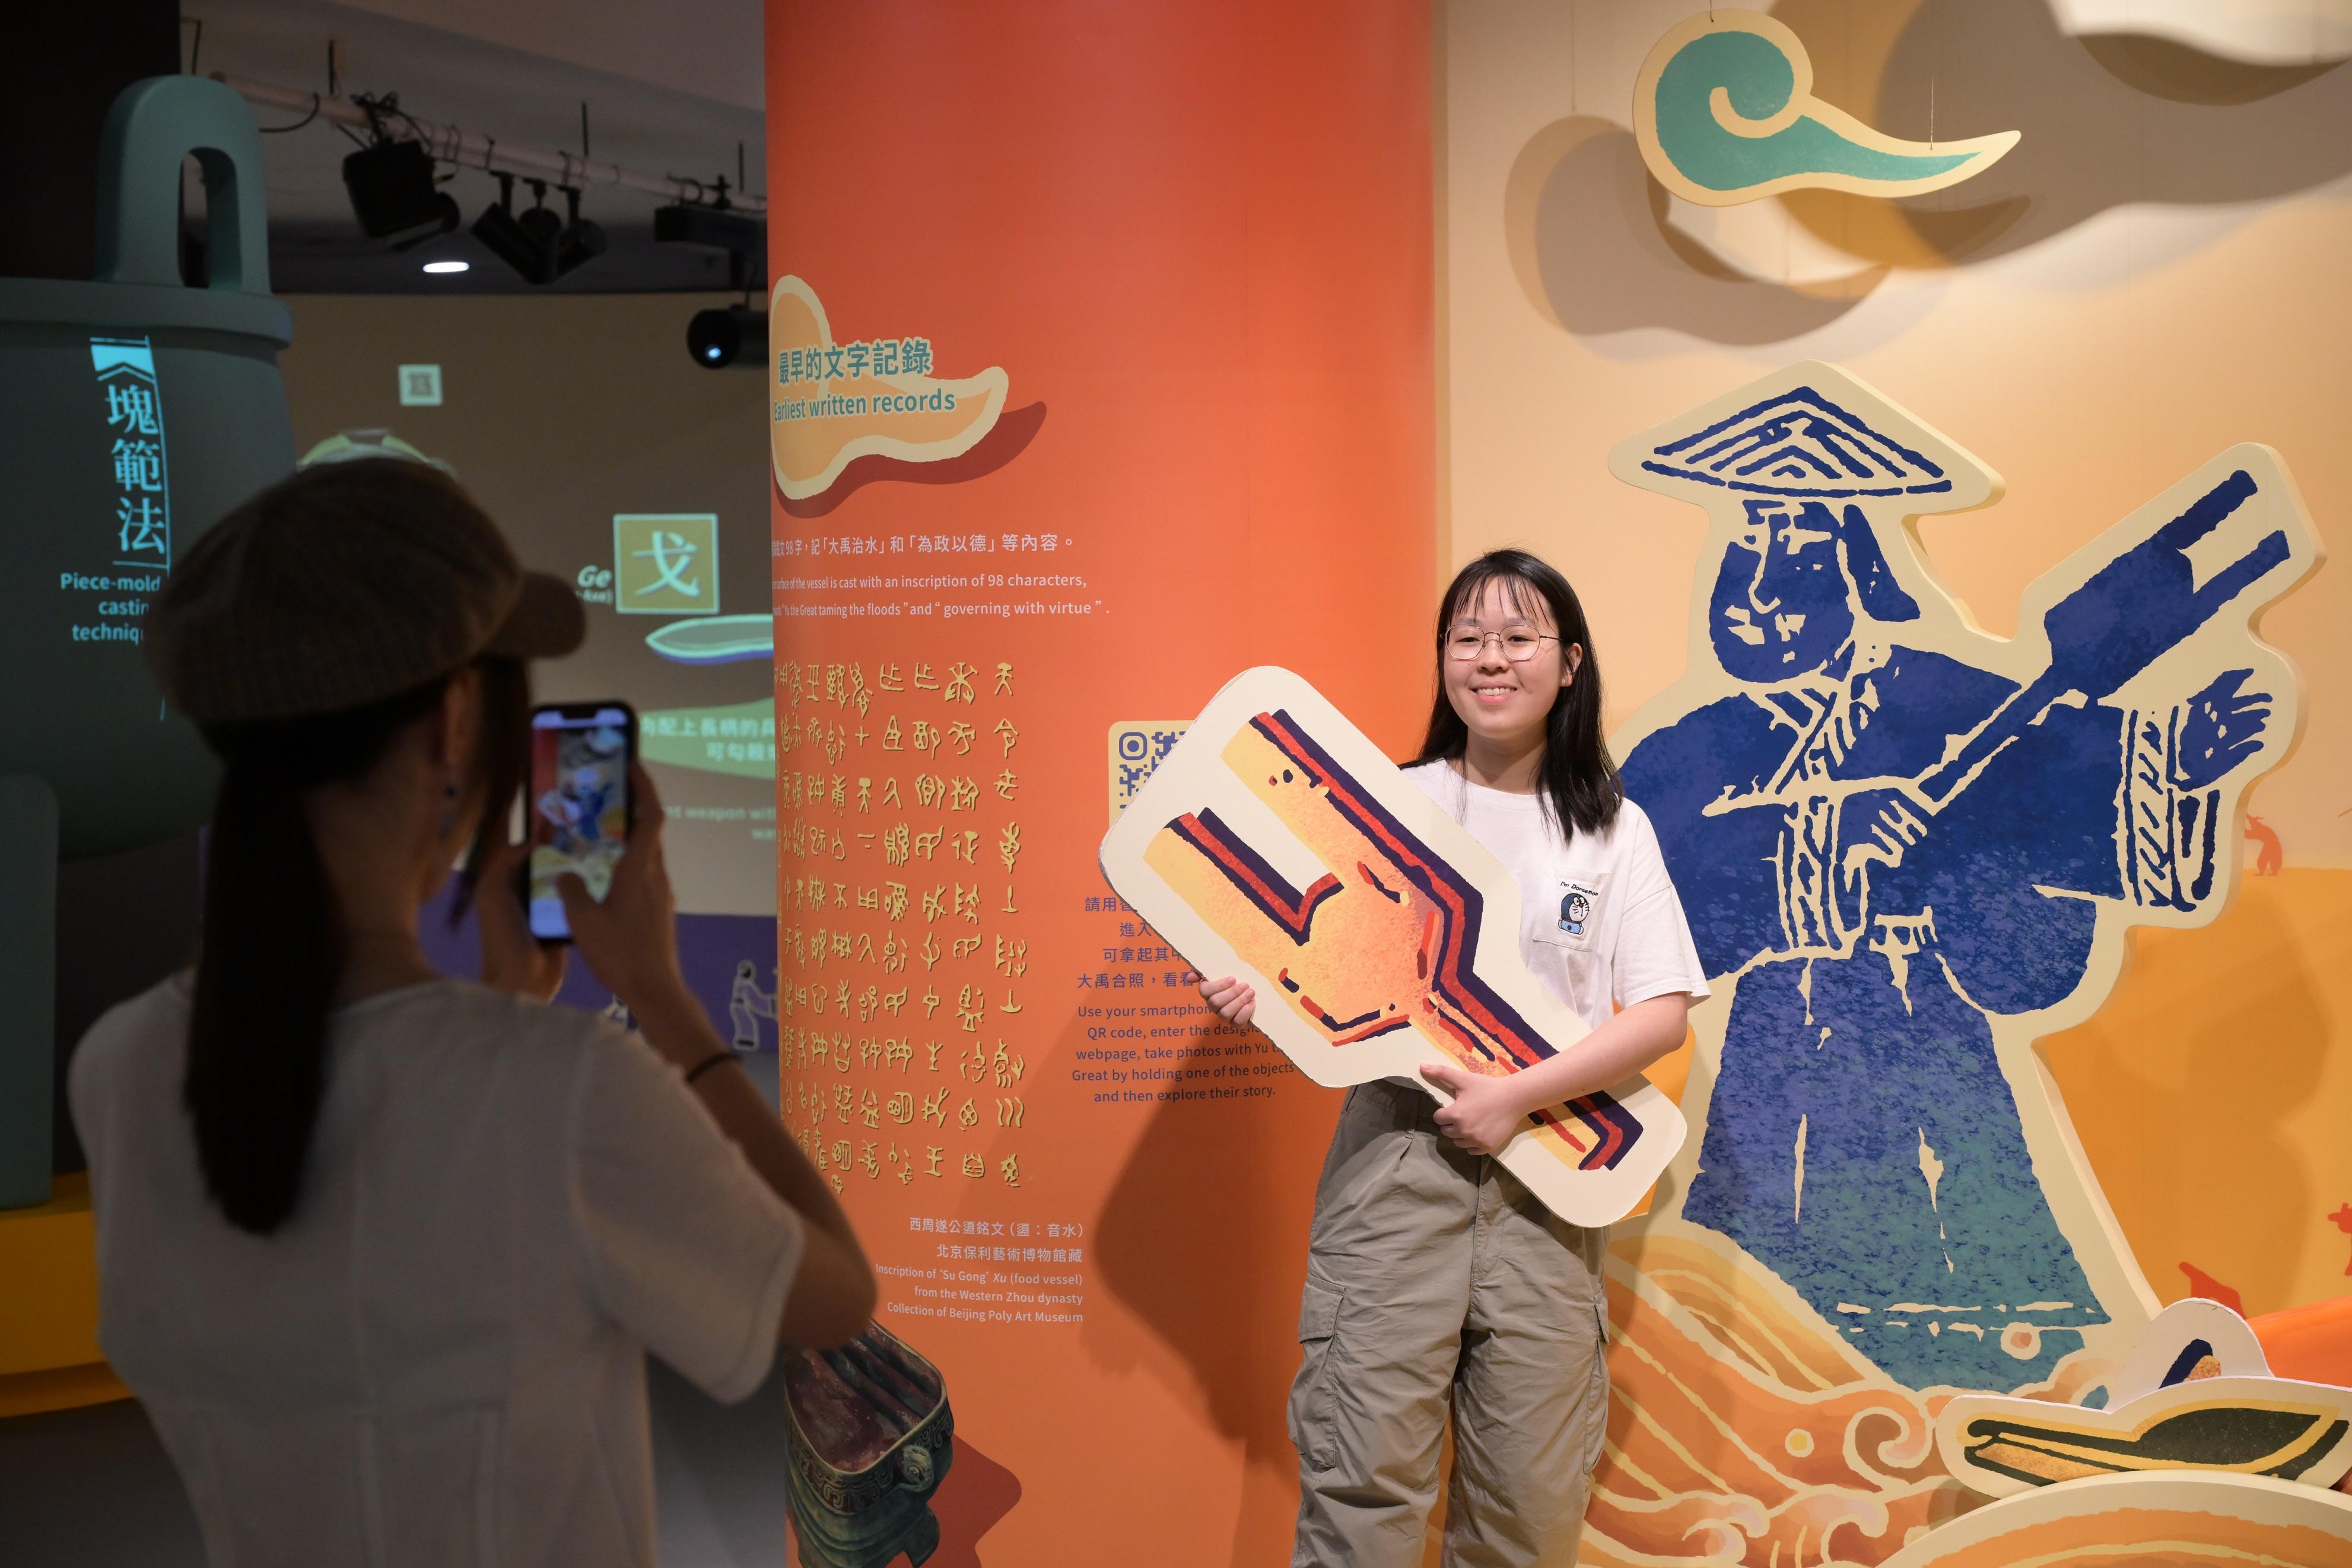 香港历史博物馆与弘扬中华文化办公室协作推出中国通史系列首个大型展览「香港赛马会呈献系列：天地之中—河南夏商周三代文明展」，自四月三日开展以来已有十五万人次前来参观。图示市民参观延长开放至八月十九日的教育互动区。